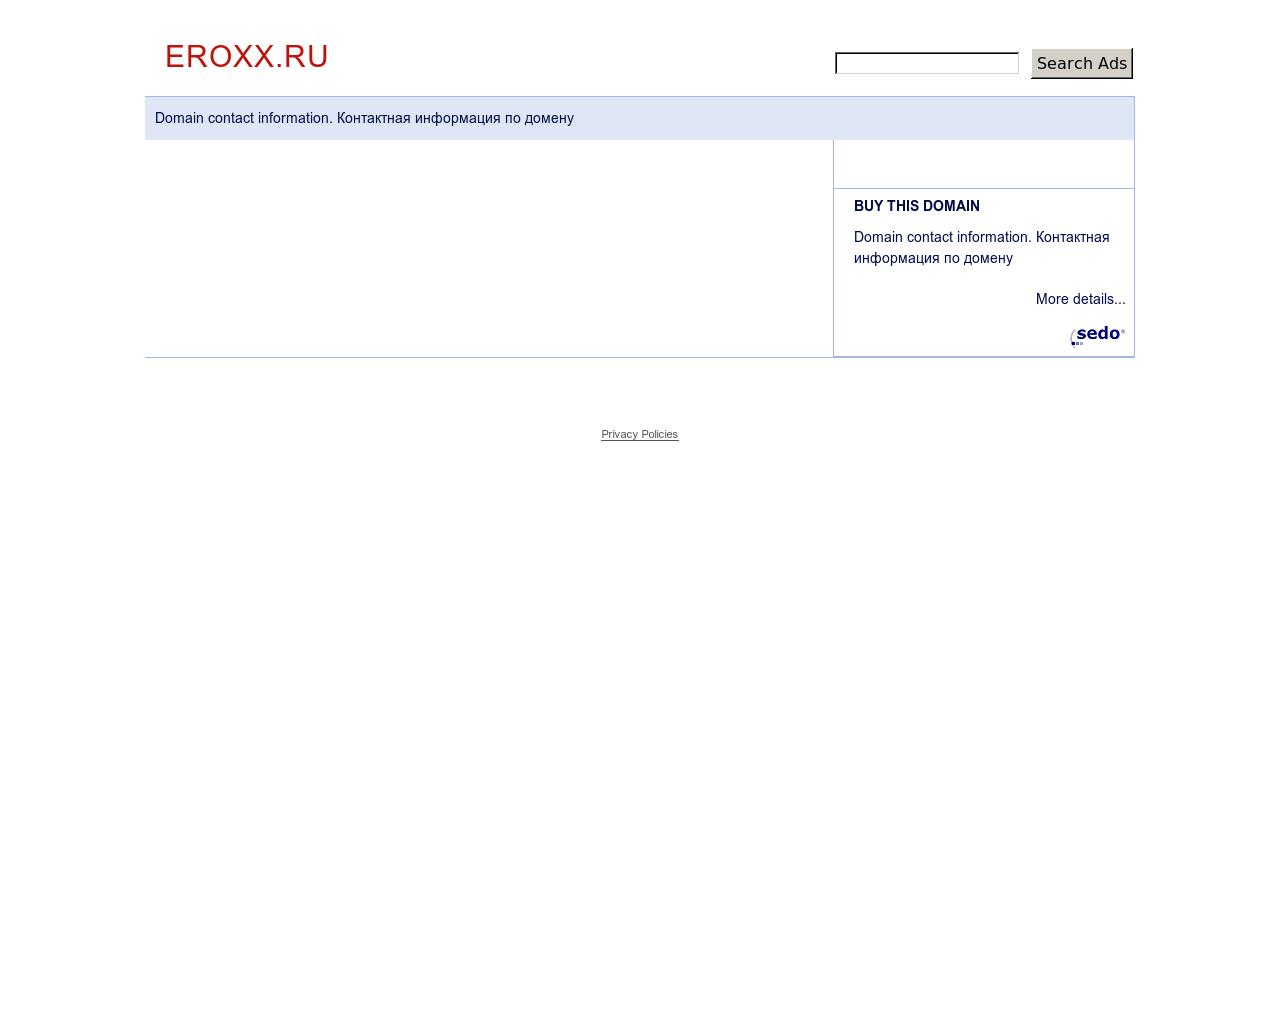 Изображение сайта eroxx.ru в разрешении 1280x1024